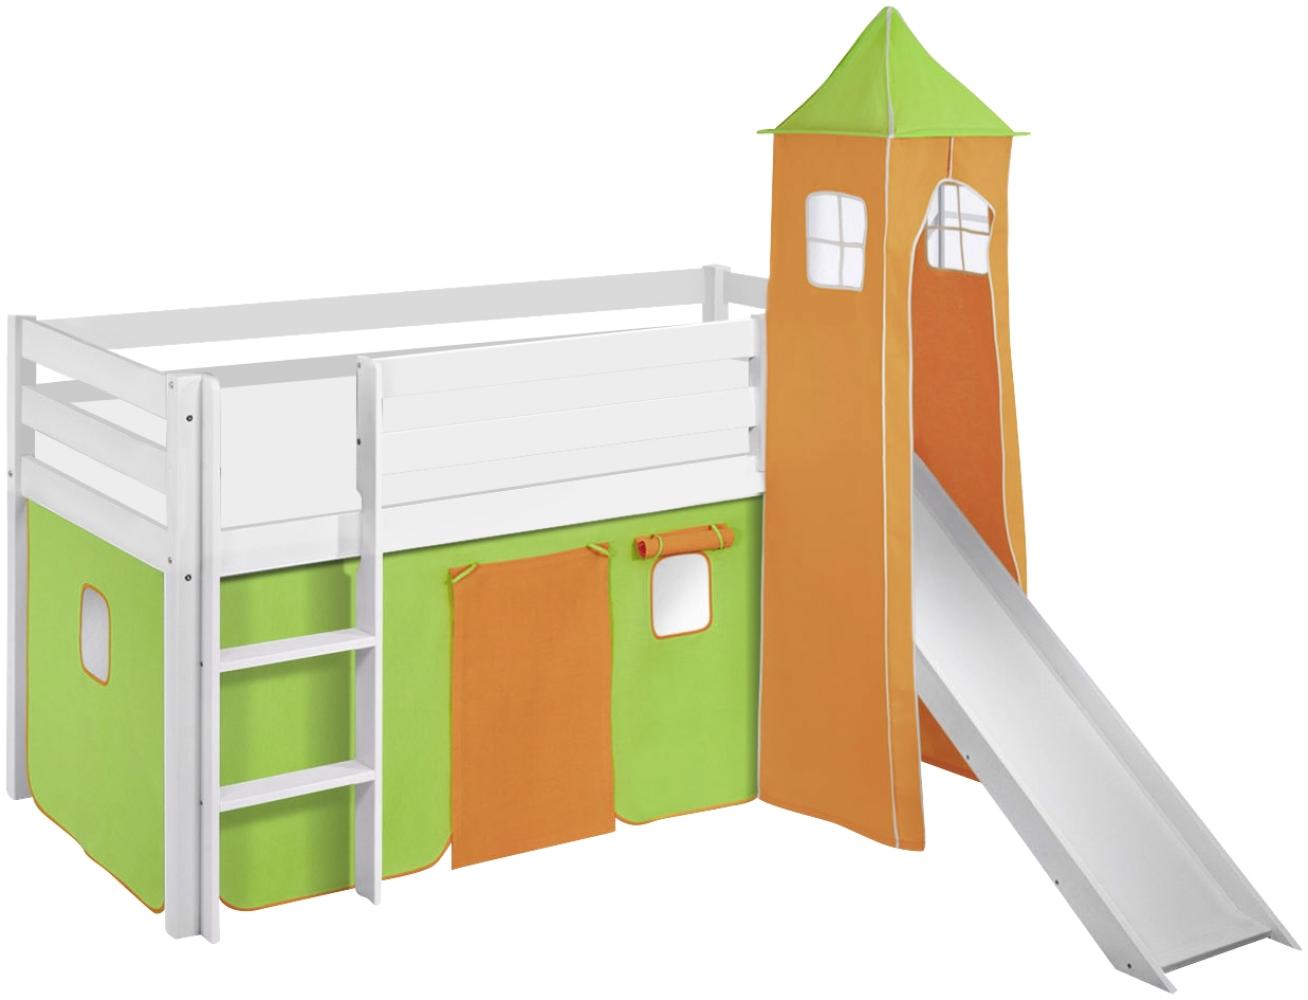 Lilokids 'Jelle' Spielbett 90 x 200 cm, Grün Orange, Kiefer massiv, mit Turm, Rutsche und Vorhang Bild 1